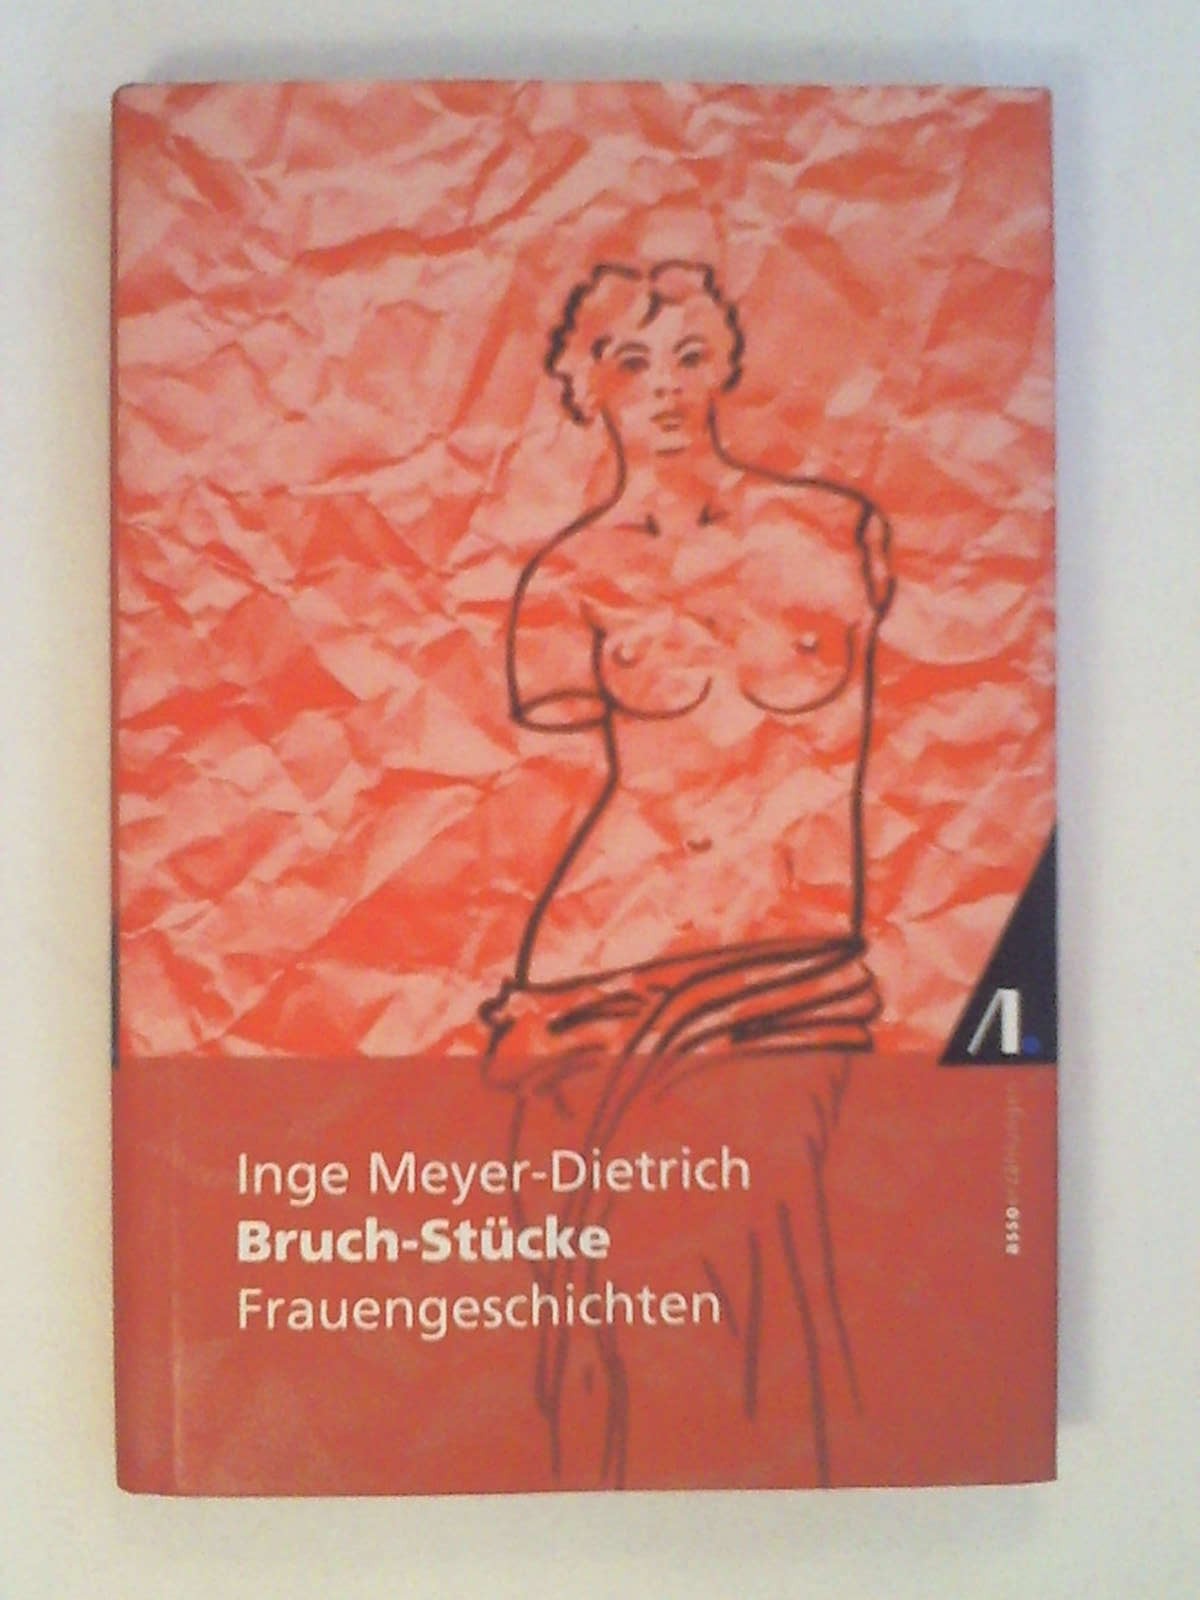 Bruch-Stücke: Frauengeschichten. - Inge Meyer-Dietrich